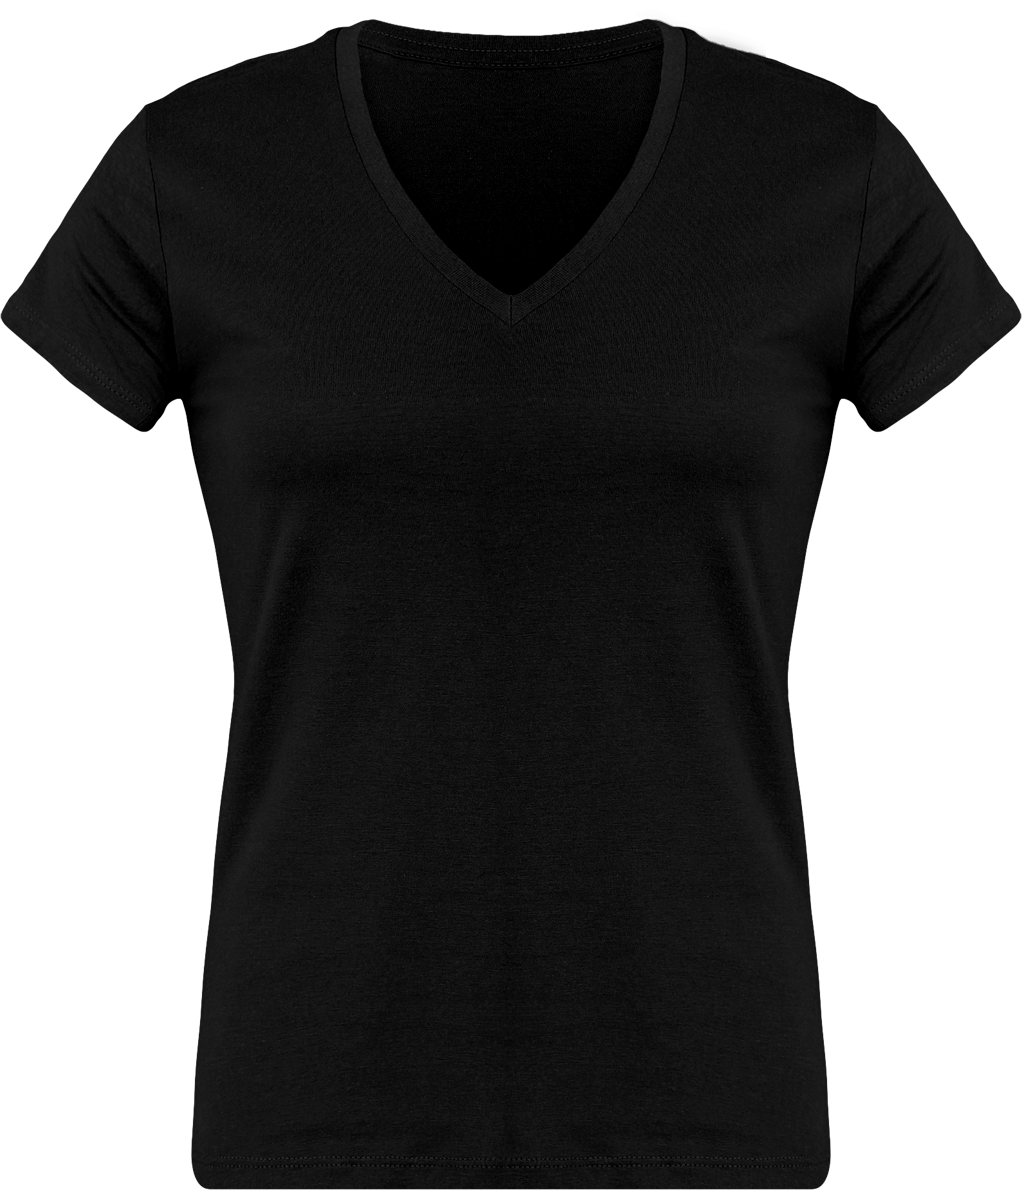 T-Shirt Femme Personnalisé, Féminin Et Confortable Avec Son Col En V Black